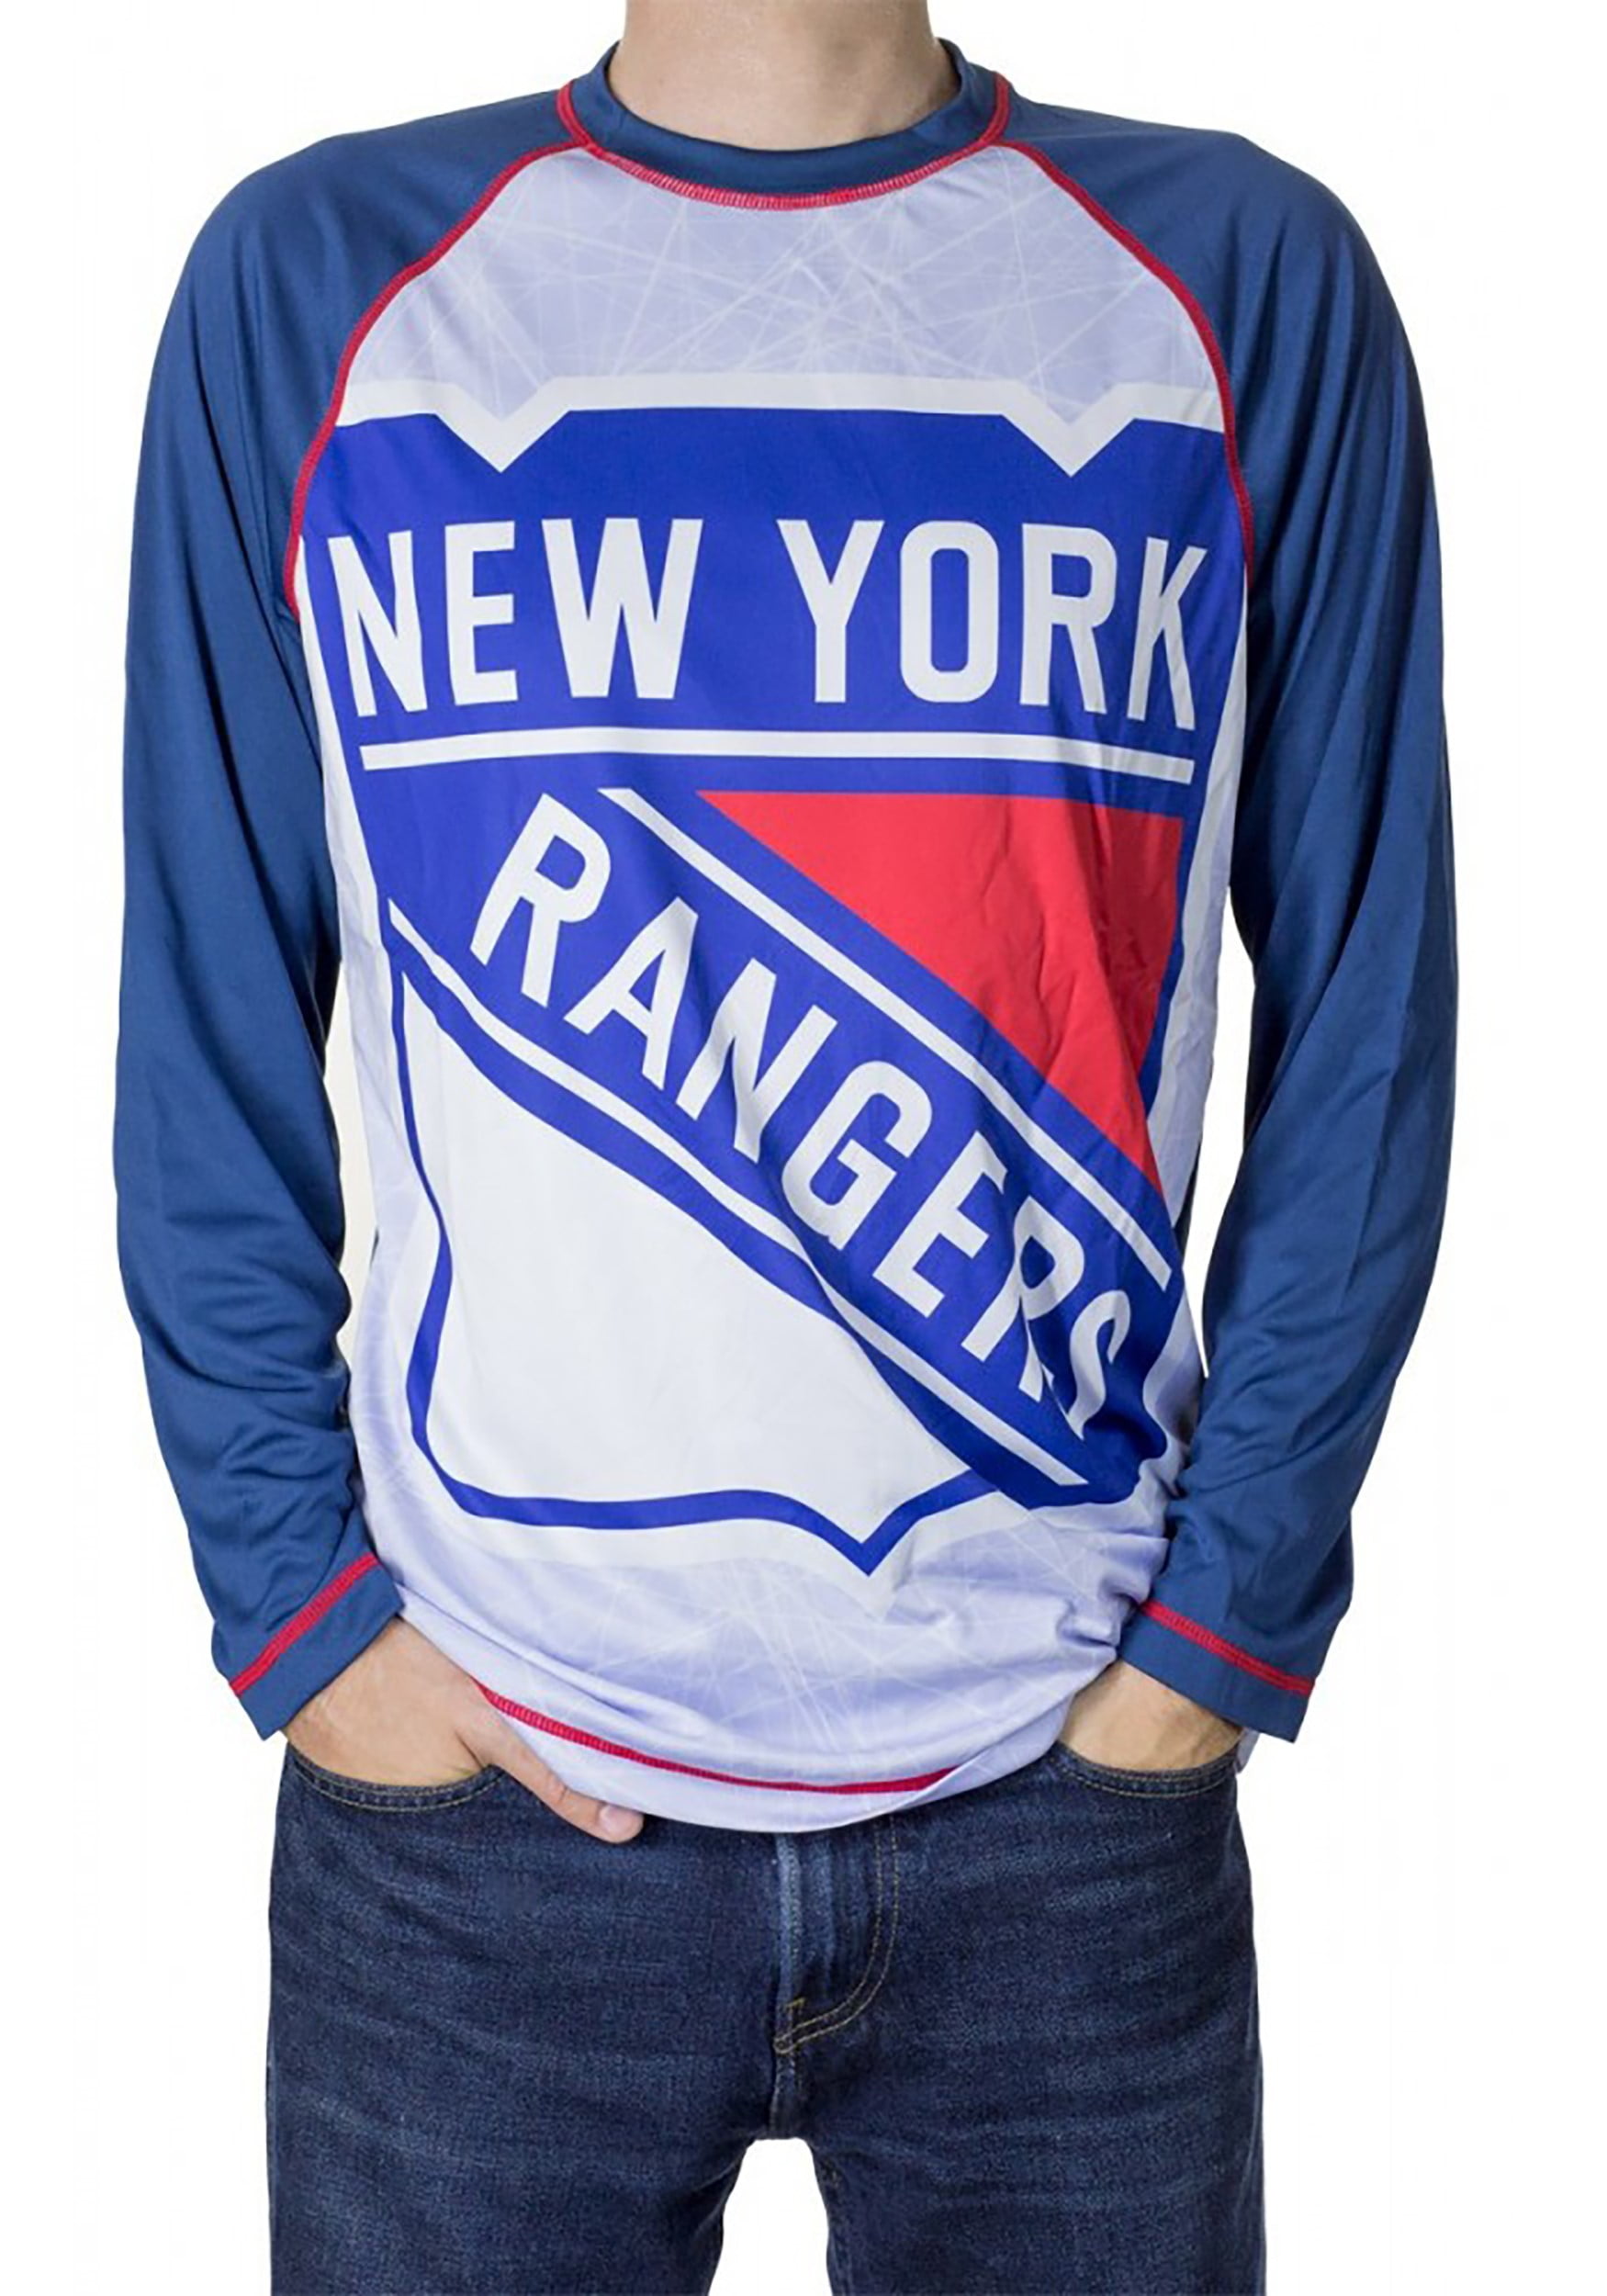 New York Rangers Playoffs Apparel, Rangers Gear, New York Rangers